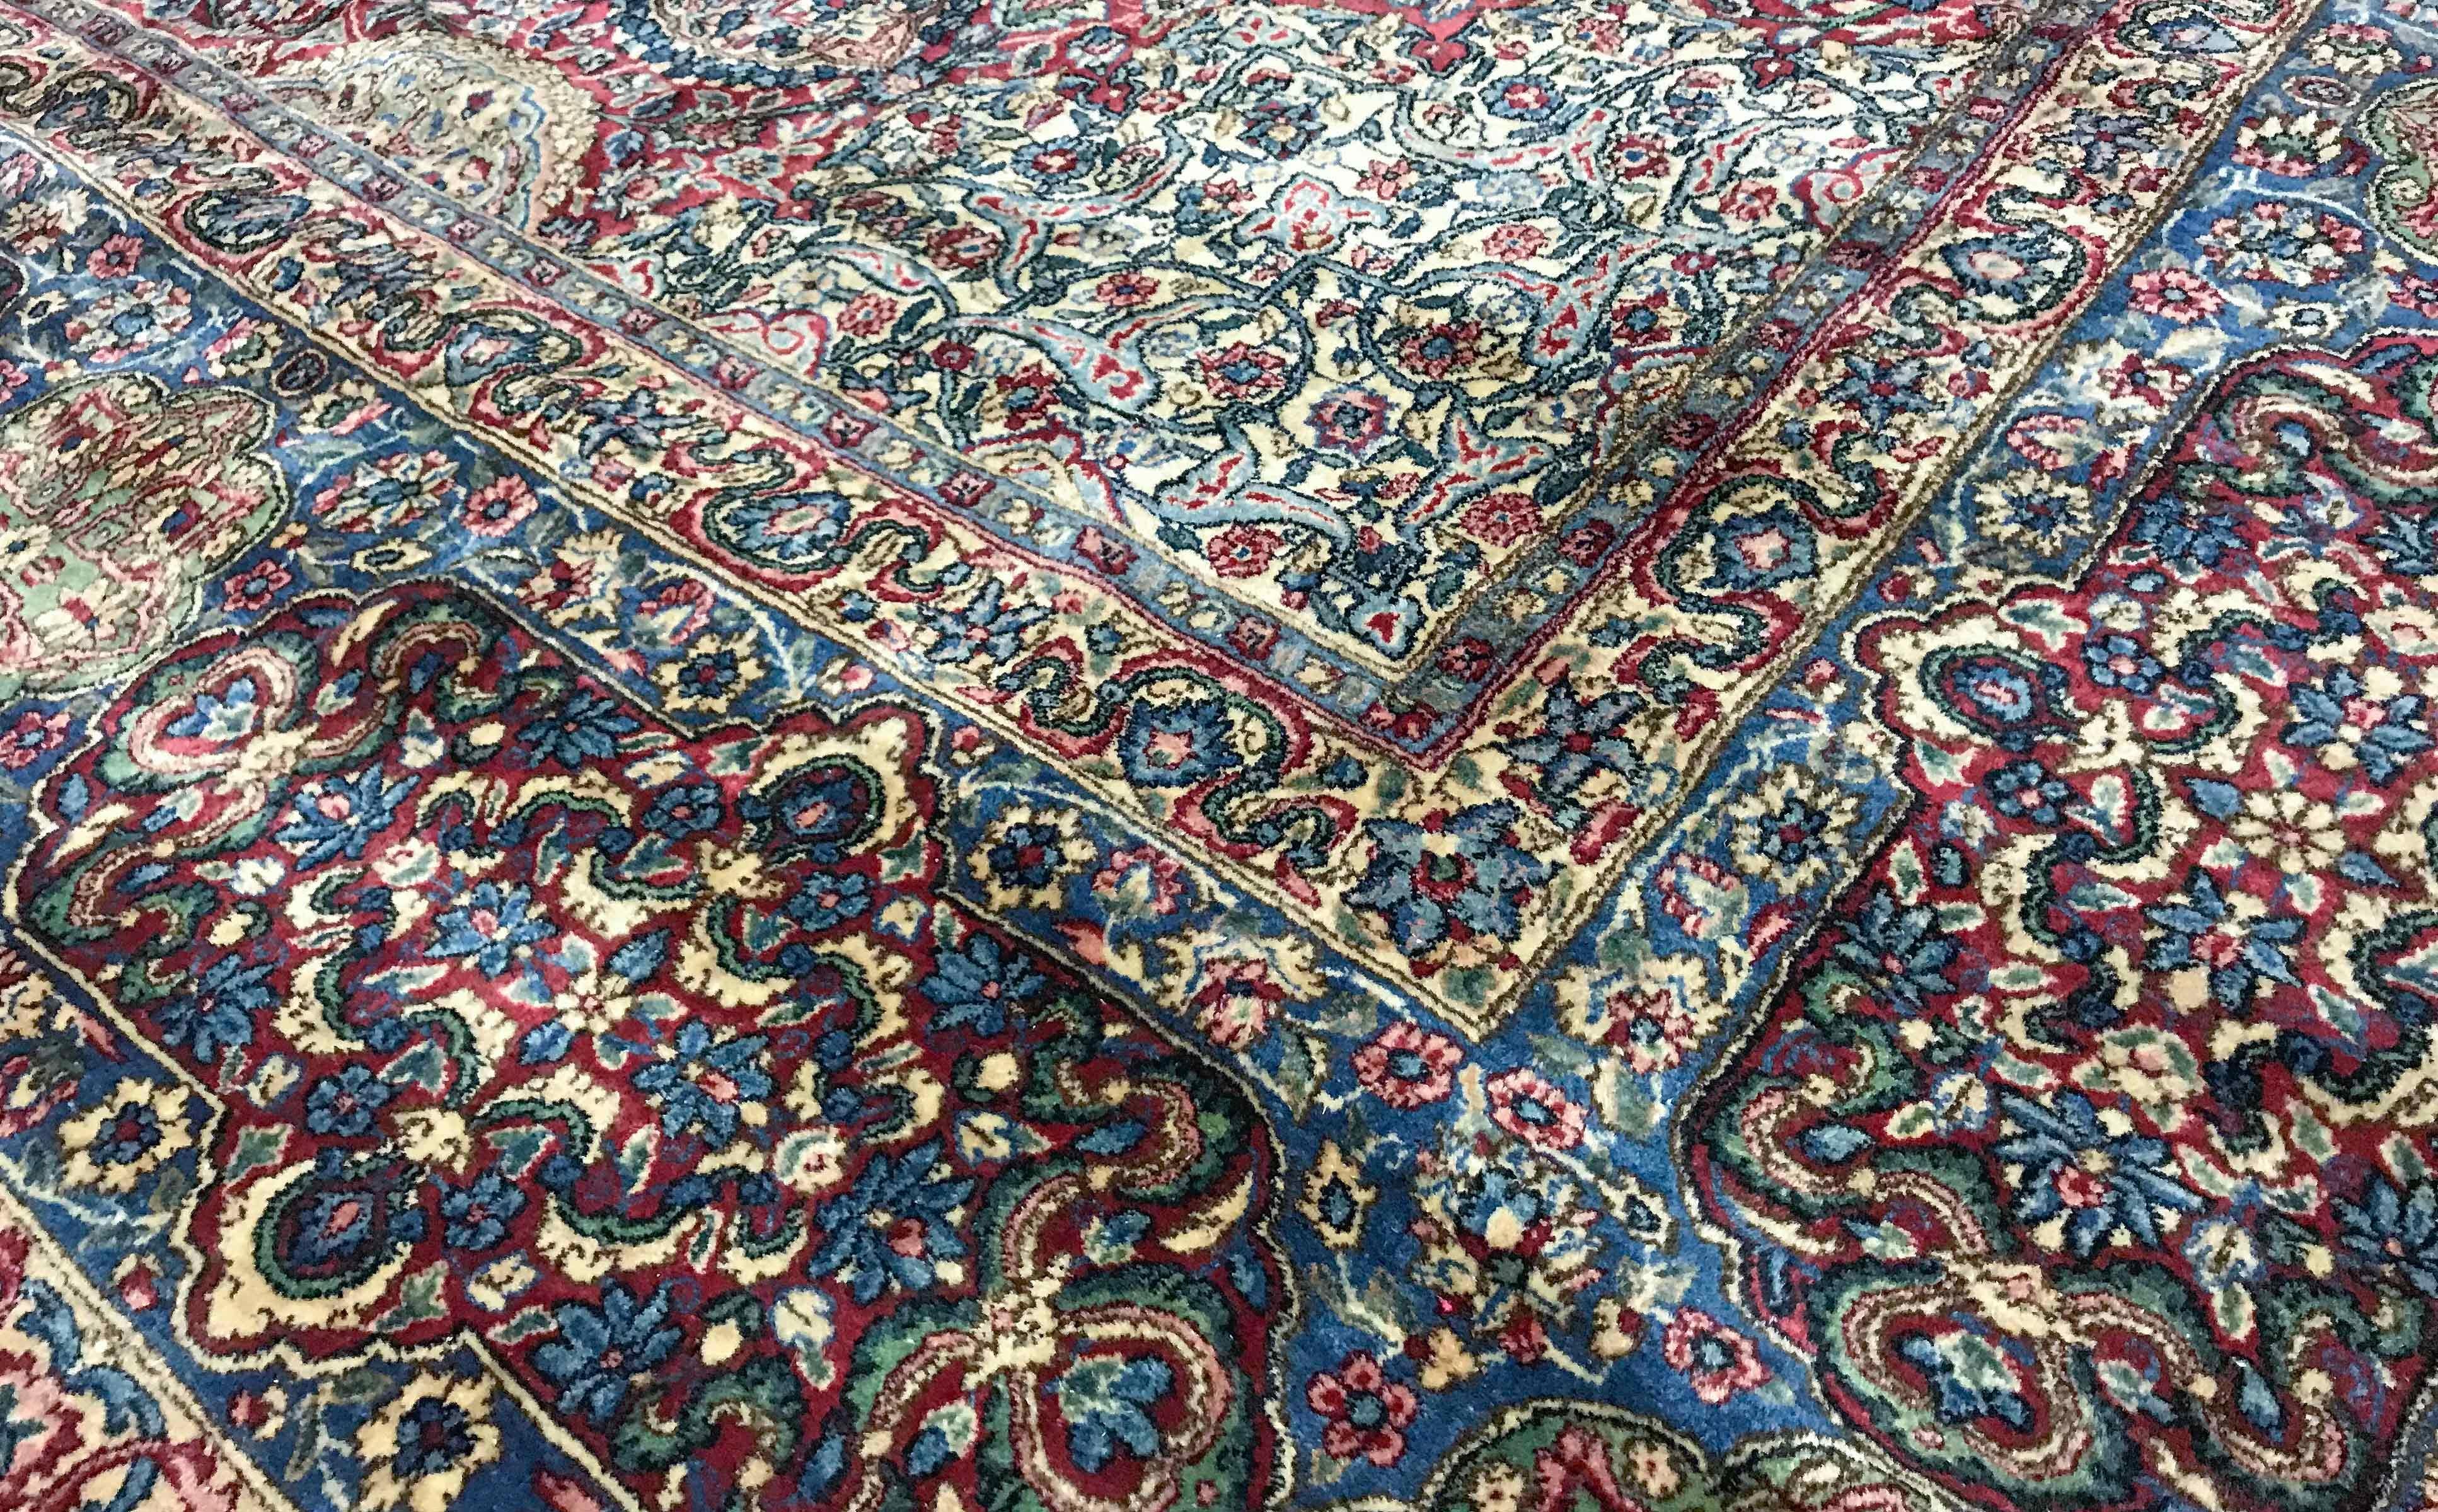 Tapis persan Kerman vintage, circa 1940. Le merveilleux design et les détails de ce tapis mettent vraiment en évidence le talent des tisserands qui ont créé cette œuvre d'art. Le champ déborde d'éléments floraux dans une grande variété de couleurs